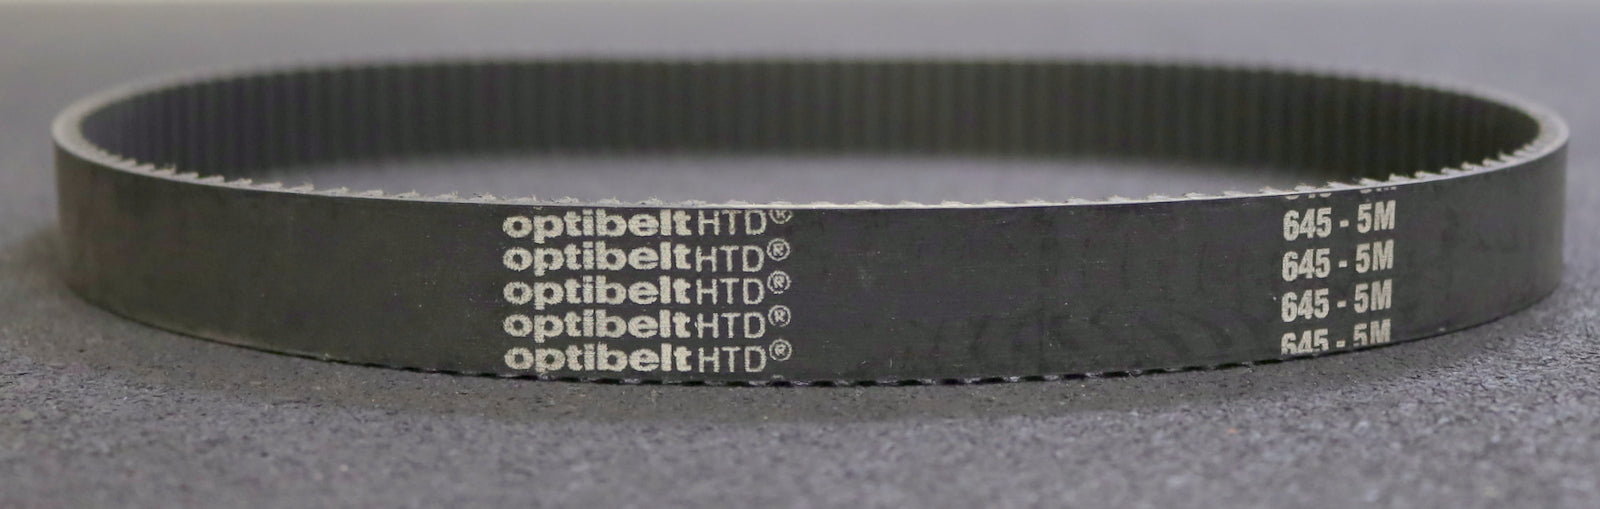 OPTIBELT Zahnriemen Timing belt 5M Länge 645mm Breite 20mm - unbenutzt